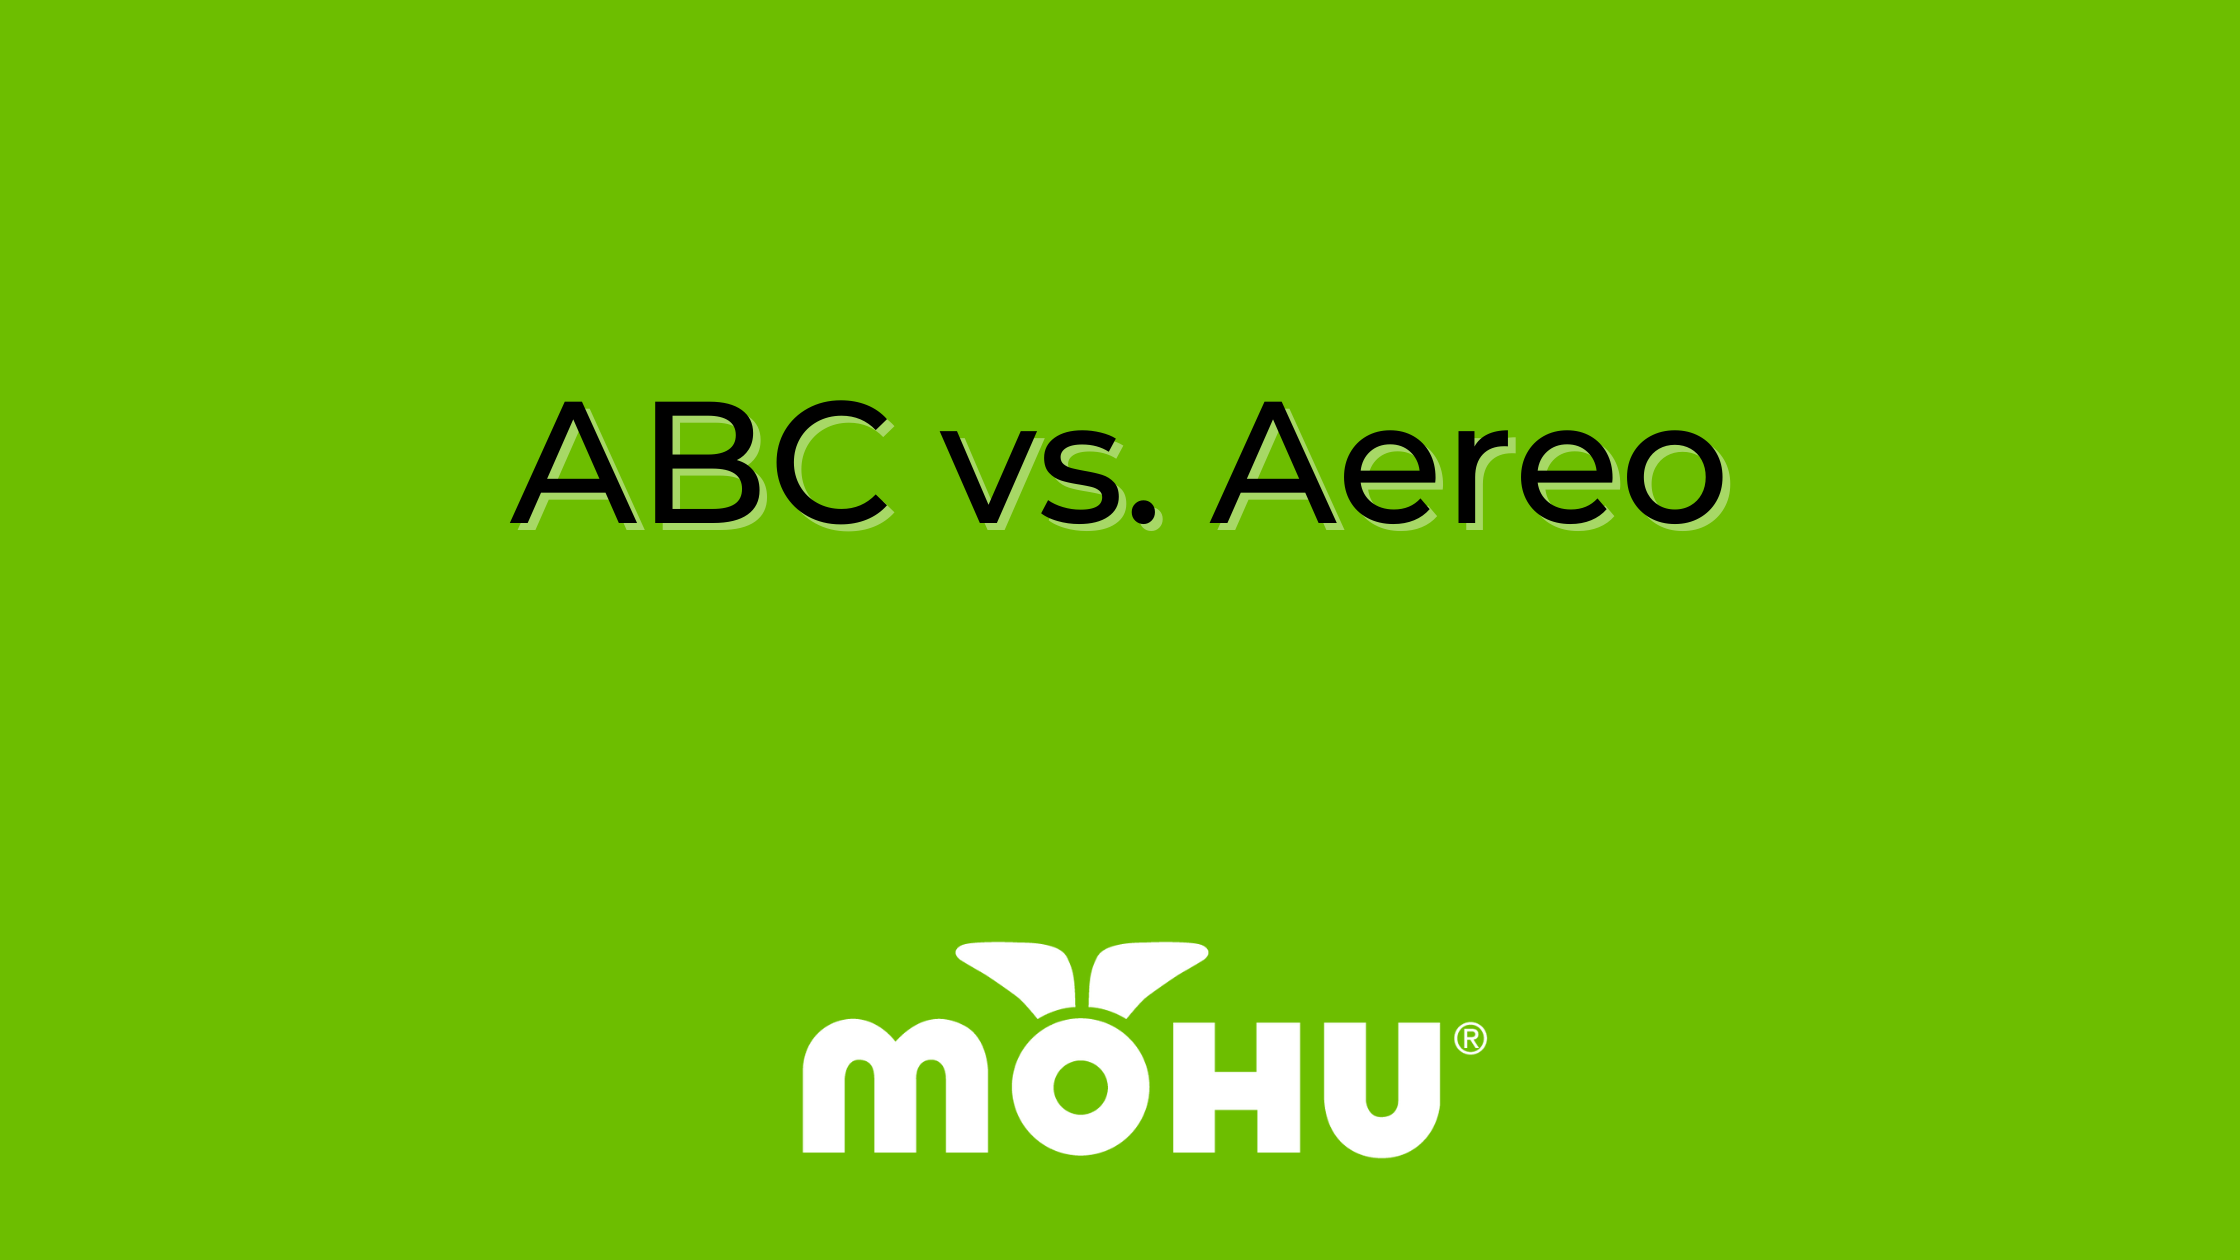 ABC vs. Aereo, Mohu